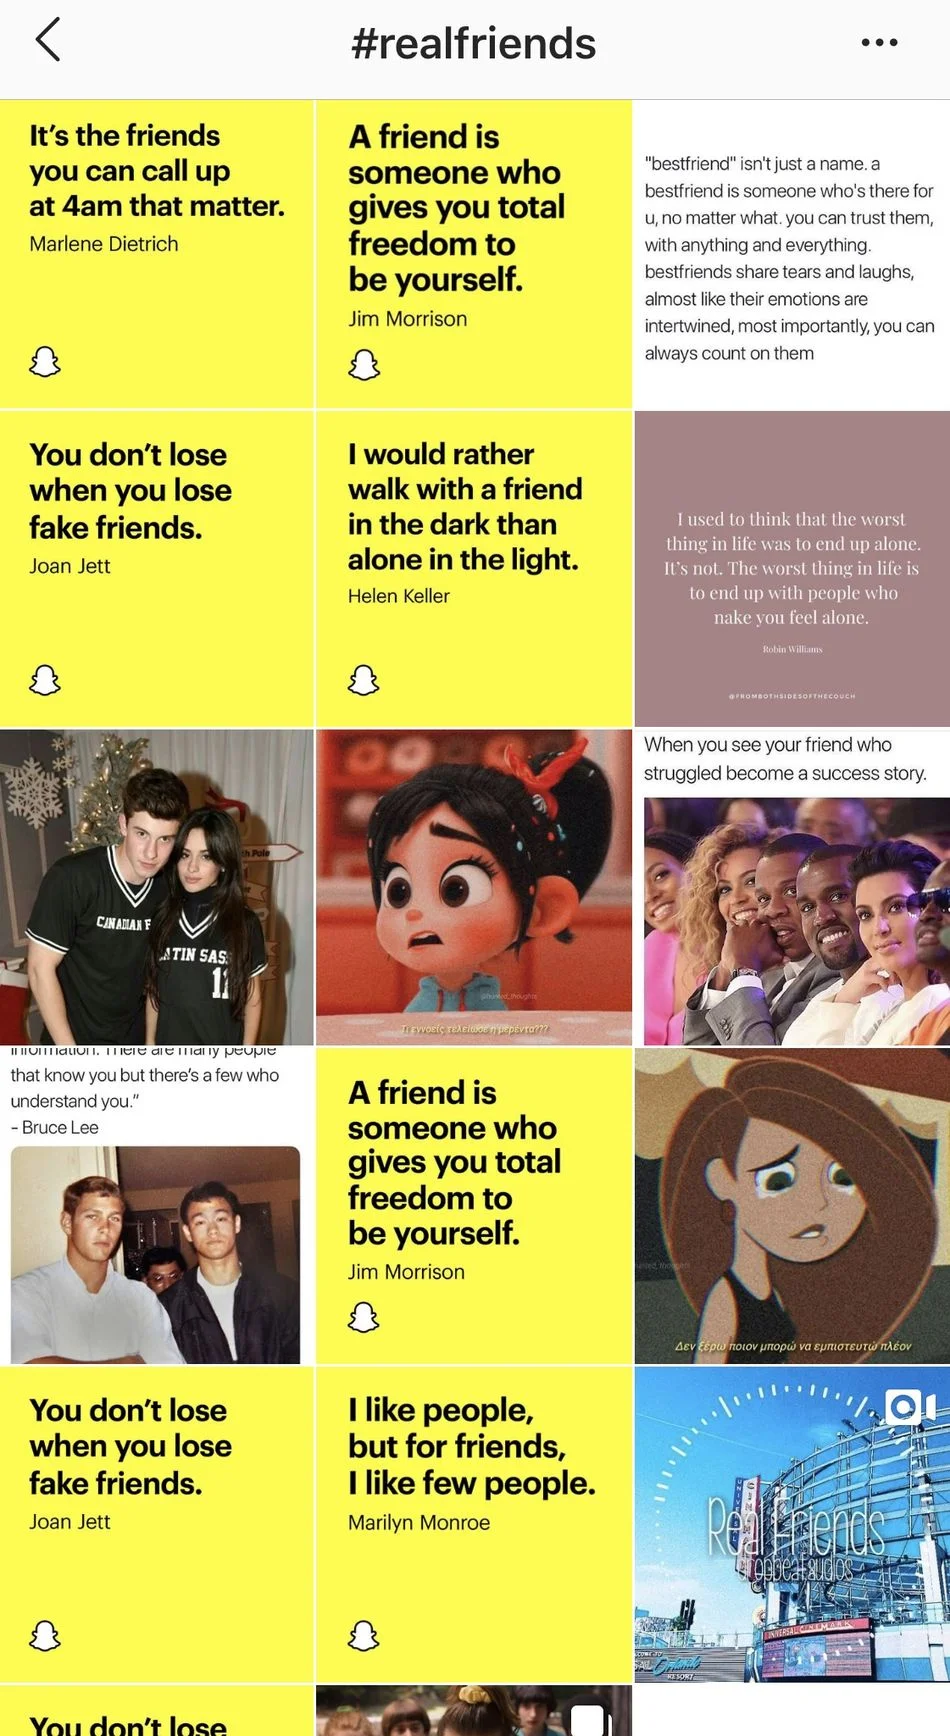 Новая реклама соцсети Snapchat троллит Instagram — «настоящие» друзья есть только в ней! - фото 2